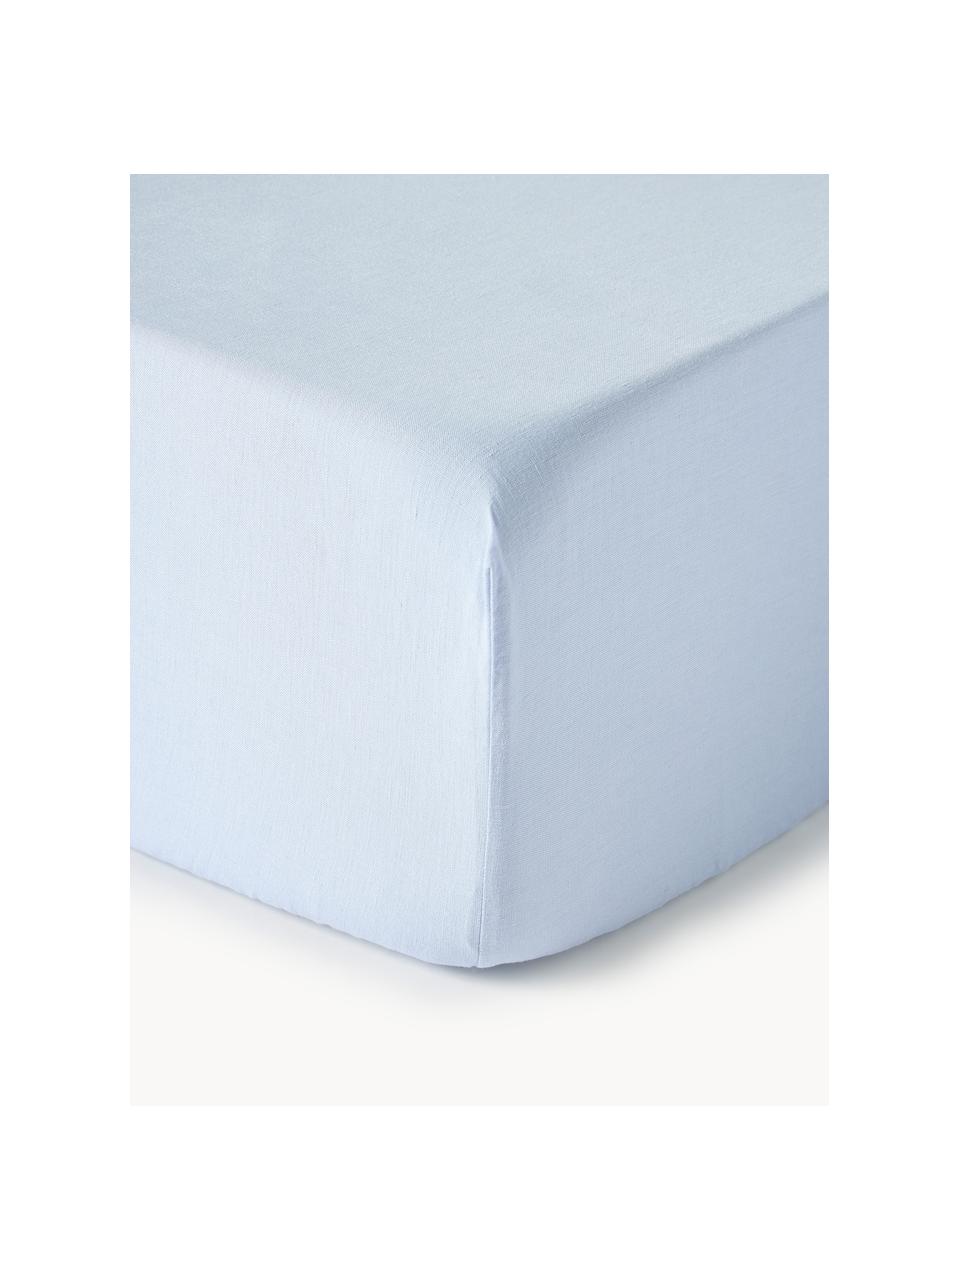 Elastická plachta na kontinentálnu posteľ z vypraného ľanu Airy, 100 % ľan

Hustota vlákna 155 TC, kvalita štandard

Ľan je prírodné vlákno vyznačujúce sa priedušnosťou, odolnosťou a mäkkosťou. Ľan je chladivý a savý materiál, ktorý rýchlo absorbuje a odvádza vlhkosť, vďaka čomu je ideálny do vysokých teplôt.

Materiál použitý v tomto výrobku bol testovaný na škodlivé látky a certifikovaný podľa STANDARD 100 by OEKO-TEX®, 6760CIT, CITEVE., Svetlomodrá, Š 90 x D 200 cm, V 35 cm